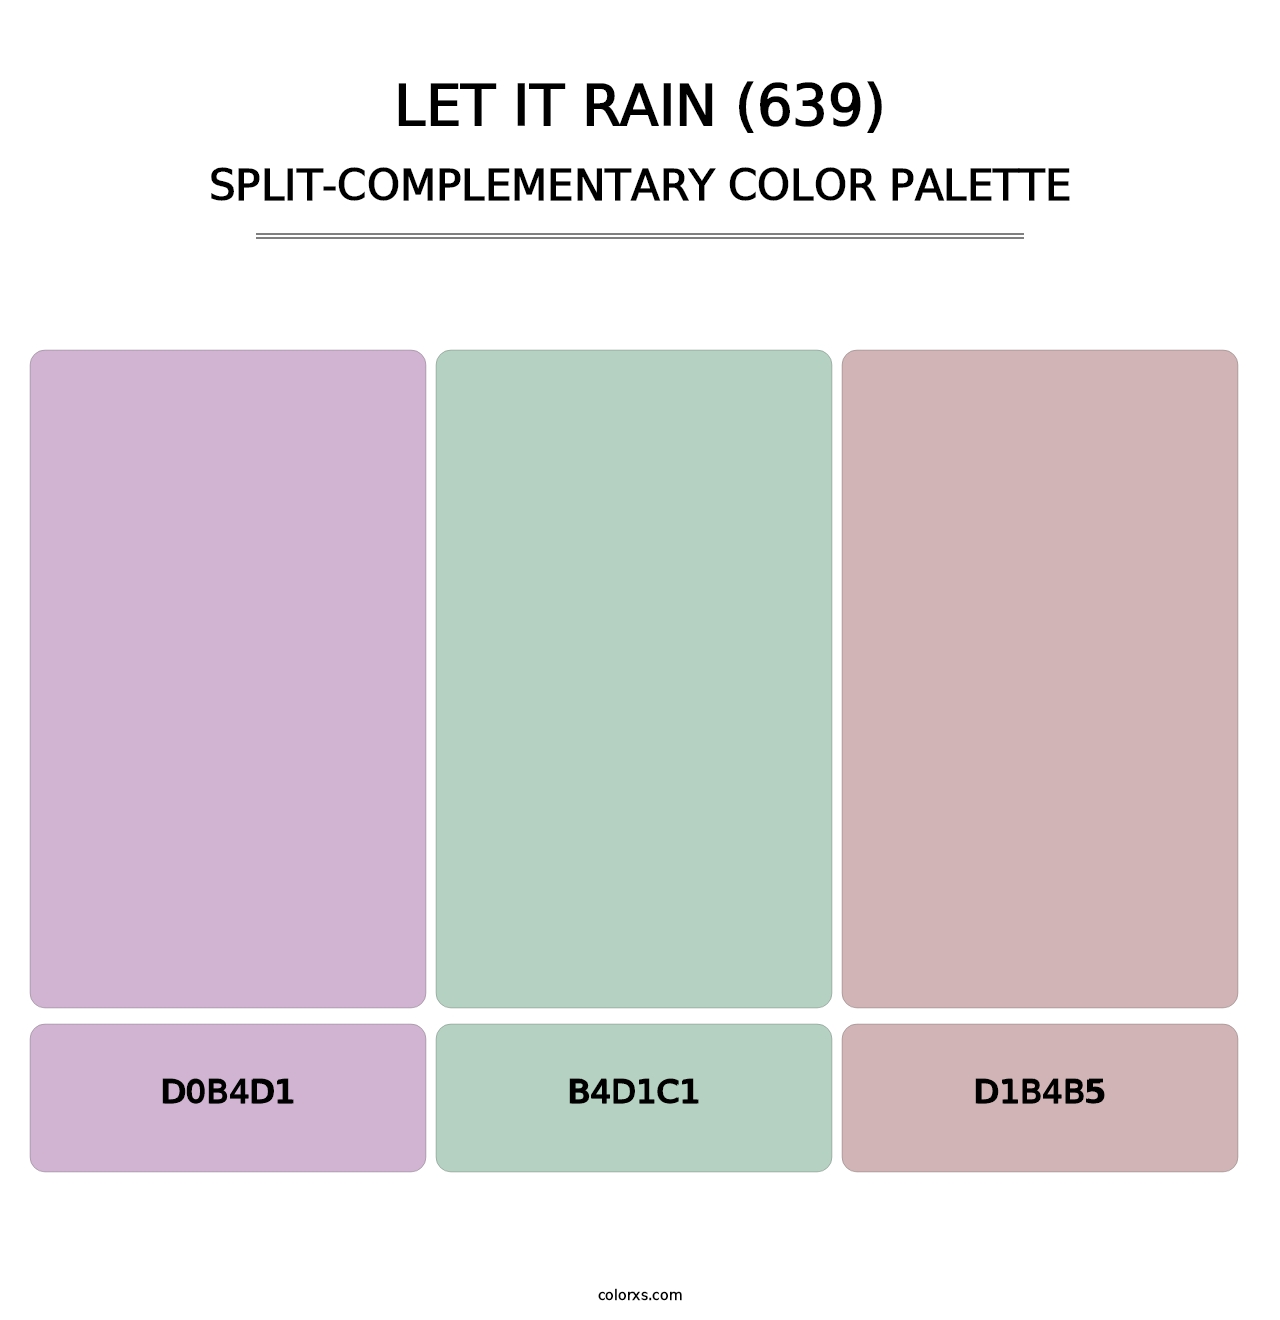 Let It Rain (639) - Split-Complementary Color Palette